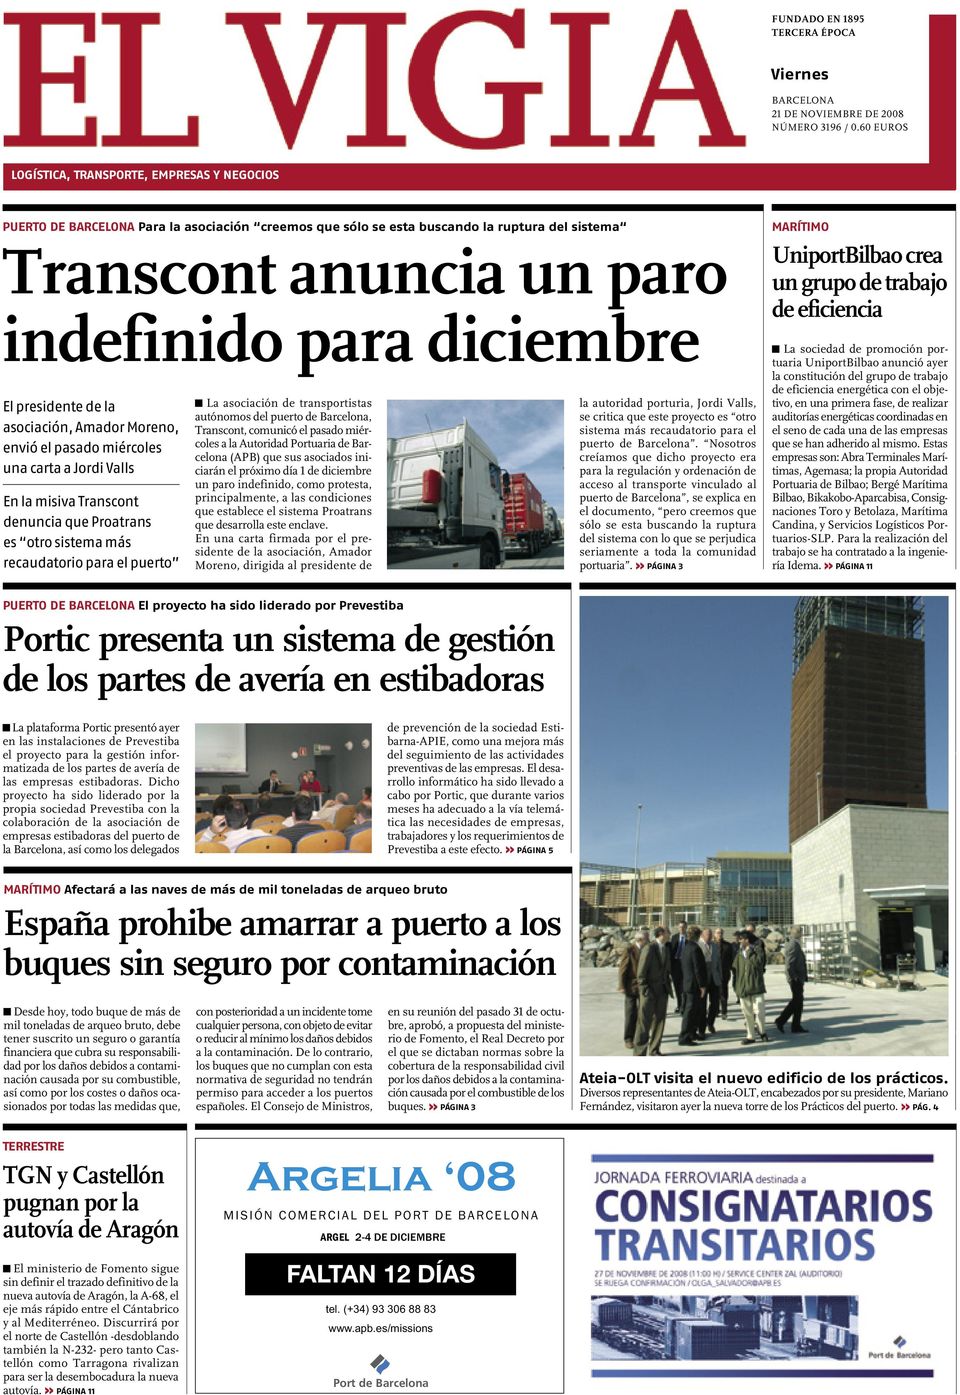 El presidente de la asociación, Amador Moreno, envió el pasado miércoles una carta a Jordi Valls En la misiva Transcont denuncia que Proatrans es otro sistema más recaudatorio para el puerto La